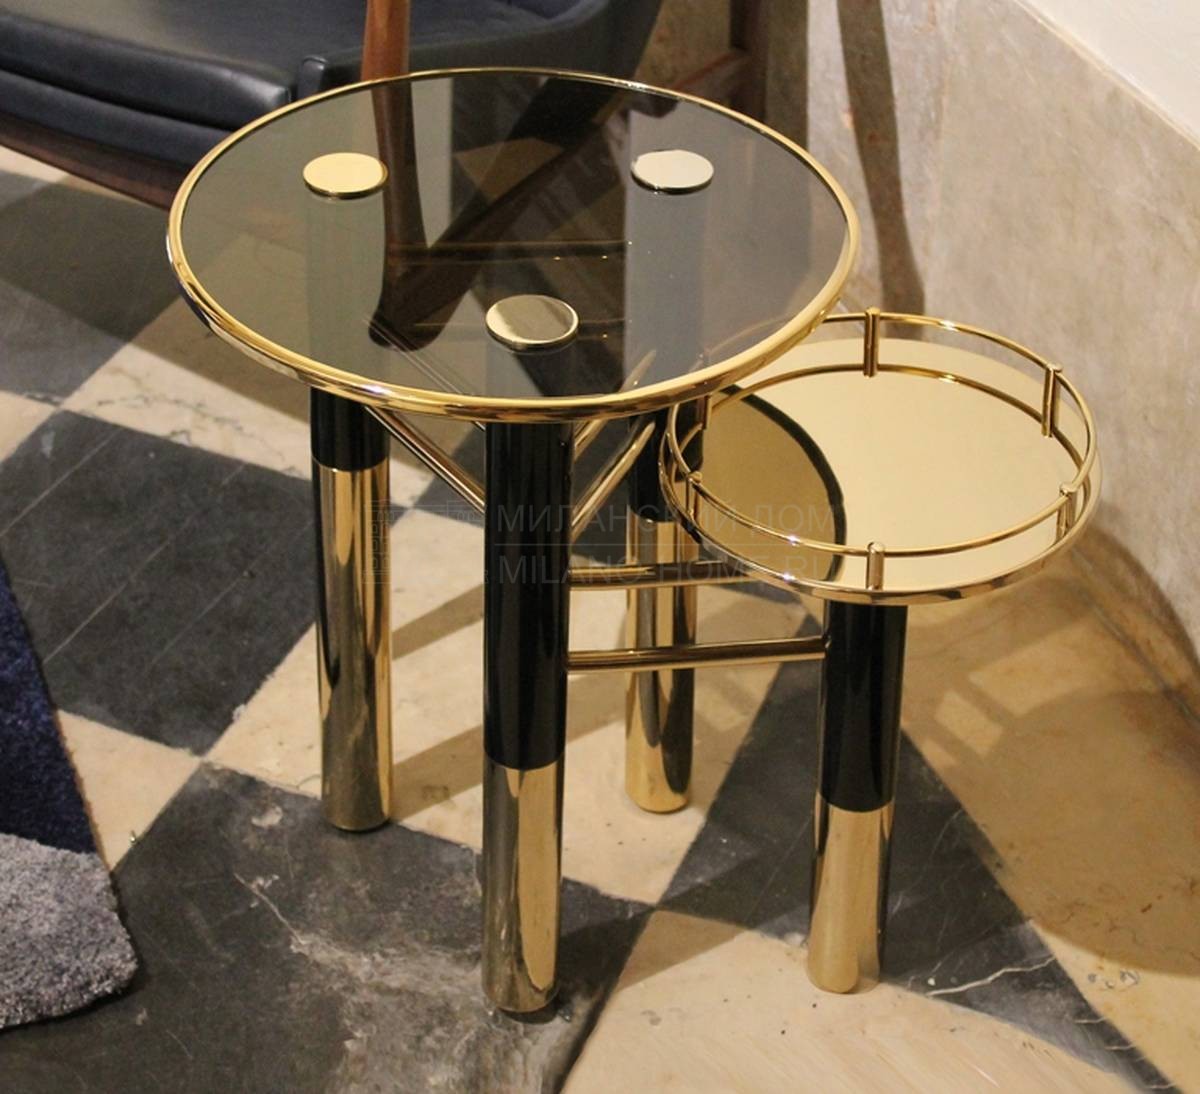 Кофейный столик Konstantin/side-table из Португалии фабрики DELIGHTFULL